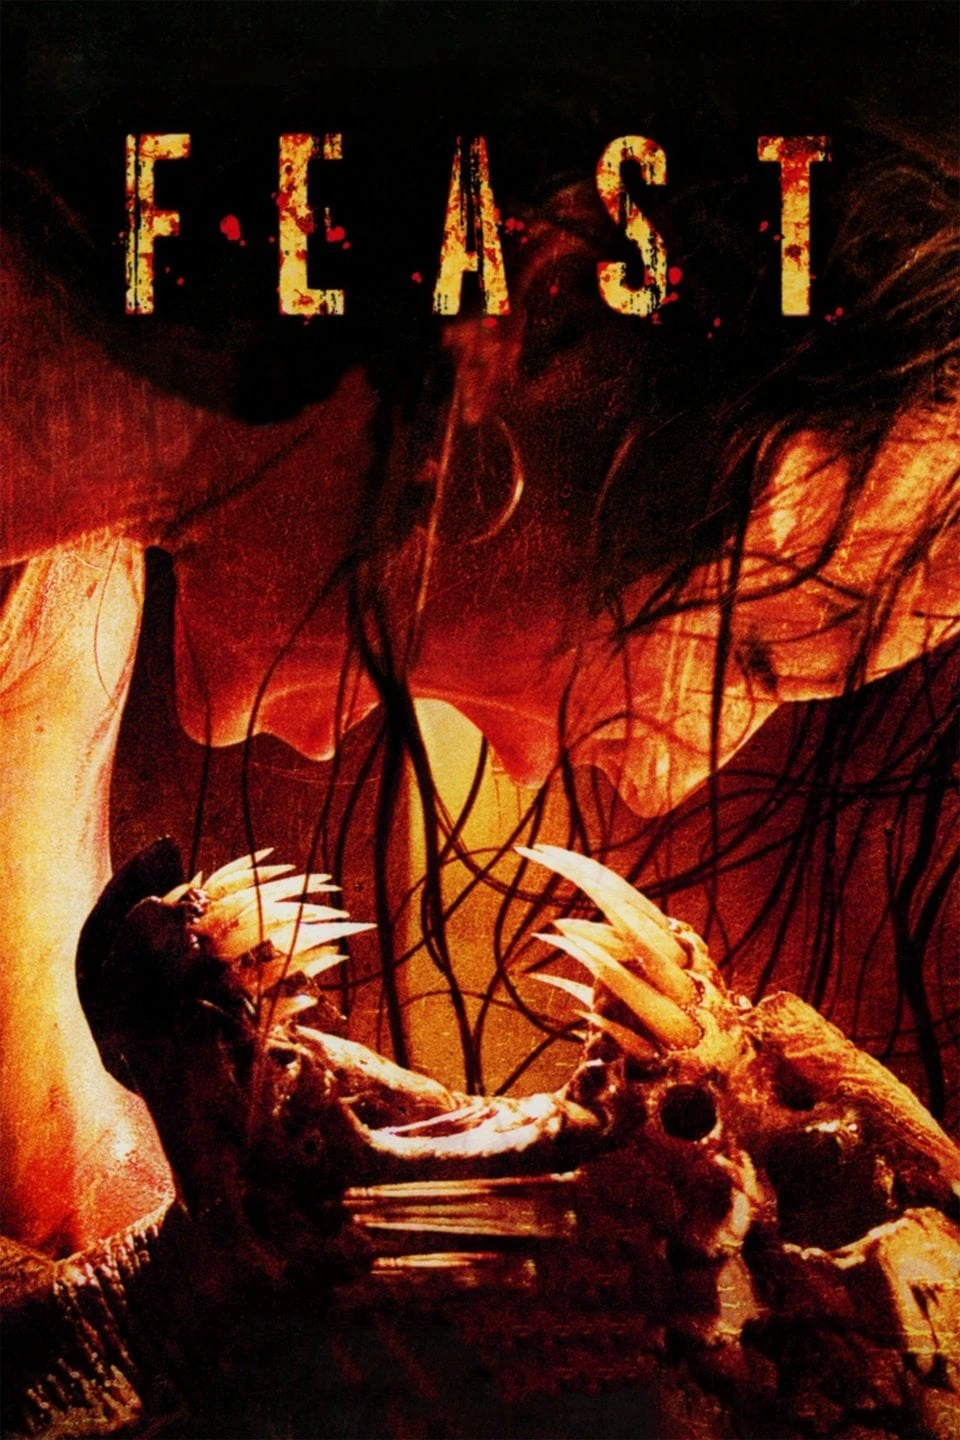 Feast | Feast (2005)